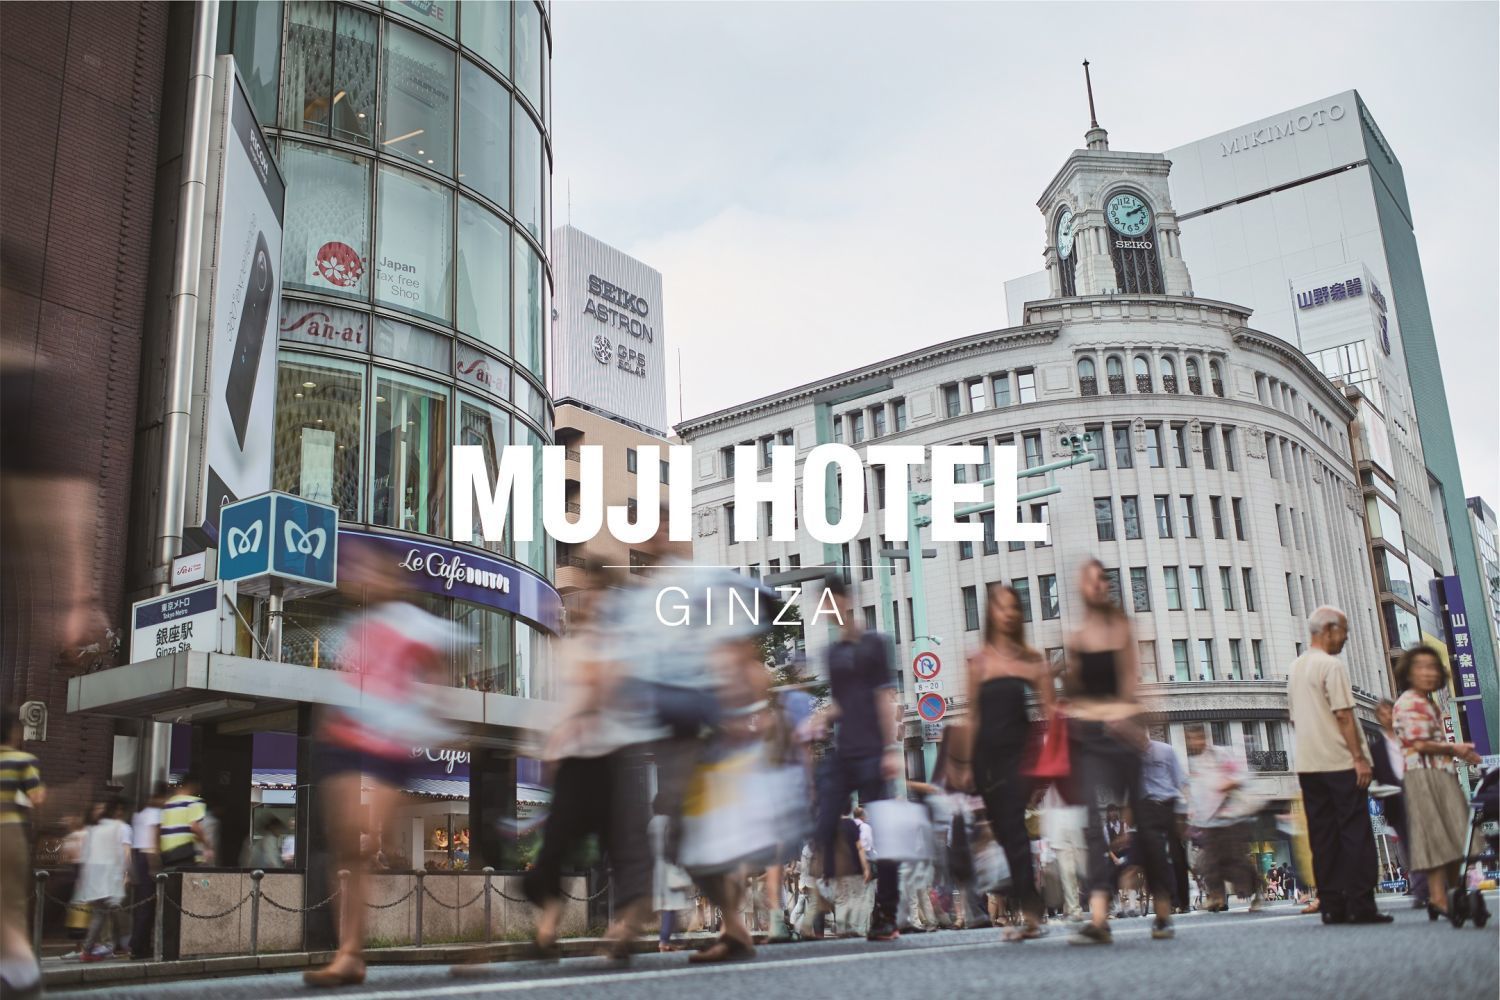 日本初の「MUJI HOTEL」が銀座に--無印良品 有楽町は2018年12月閉店